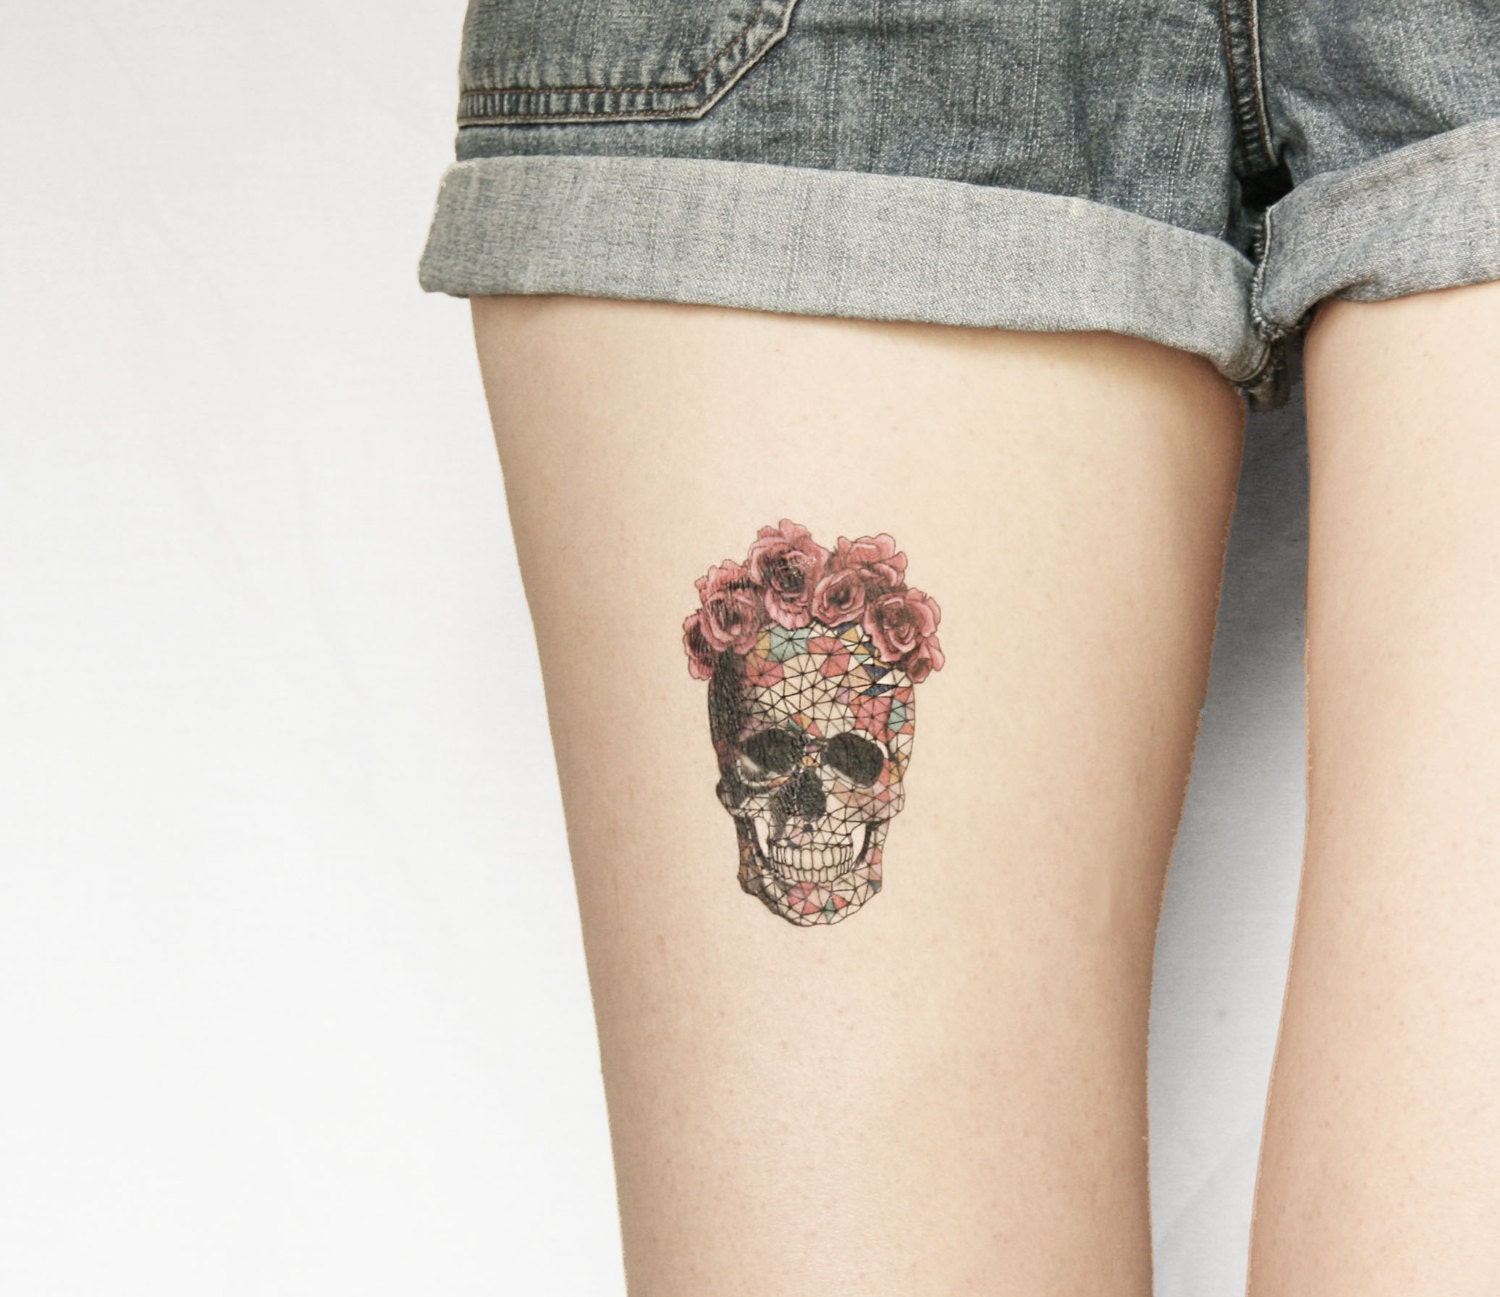 Flower Sugar Skull Tattoo